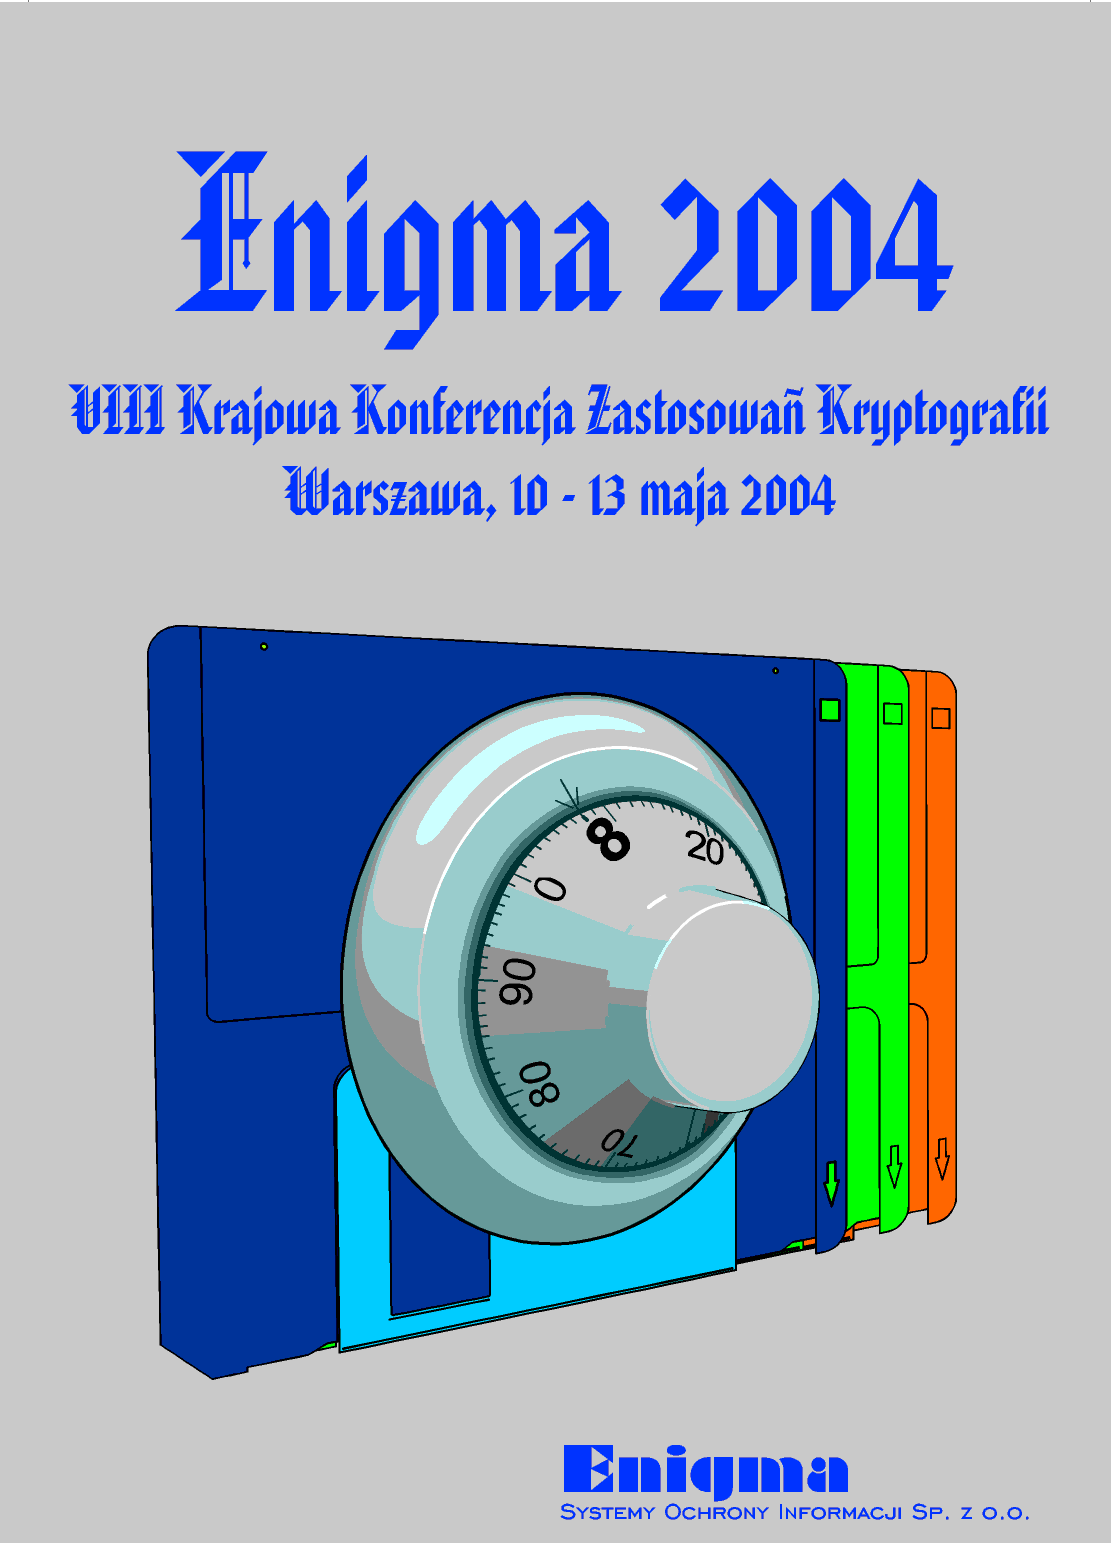 VIII Krajowa Konferencja Zastosowa Kryptografii ENIGMA 2004